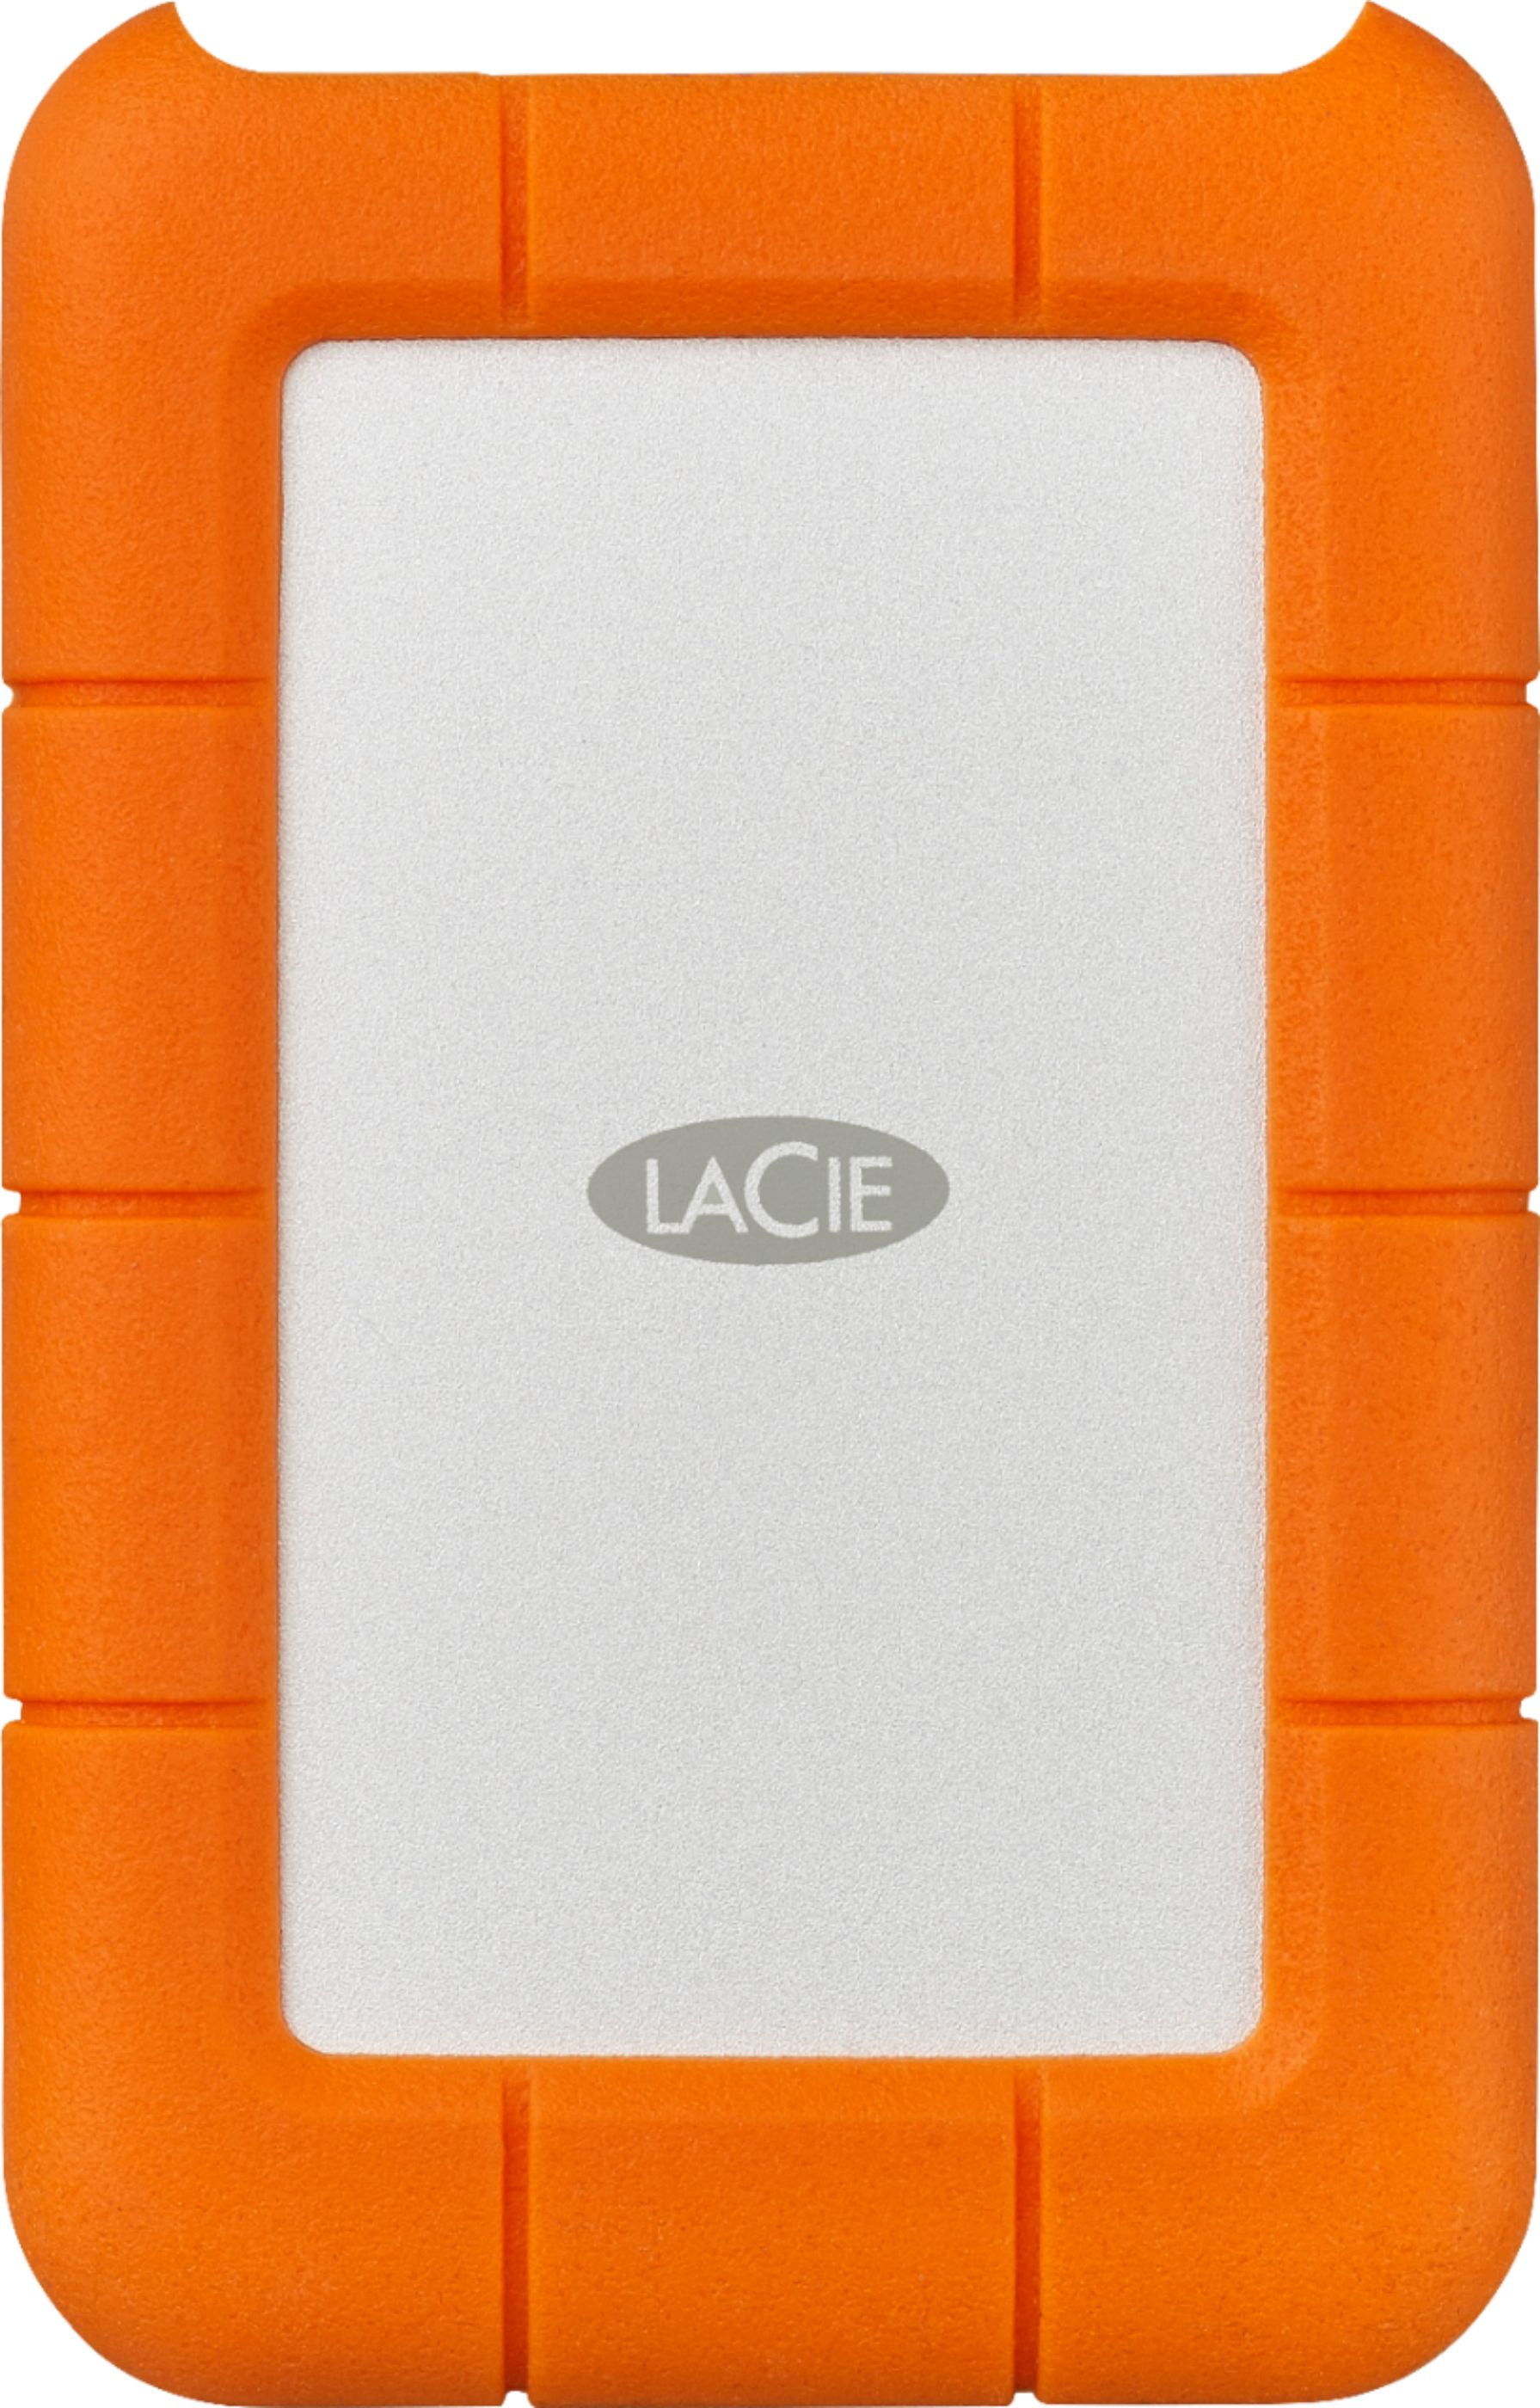 LaCie Rugged USB-C 1TB External USB 3.1 Gen 1 Portable Hard Drive 